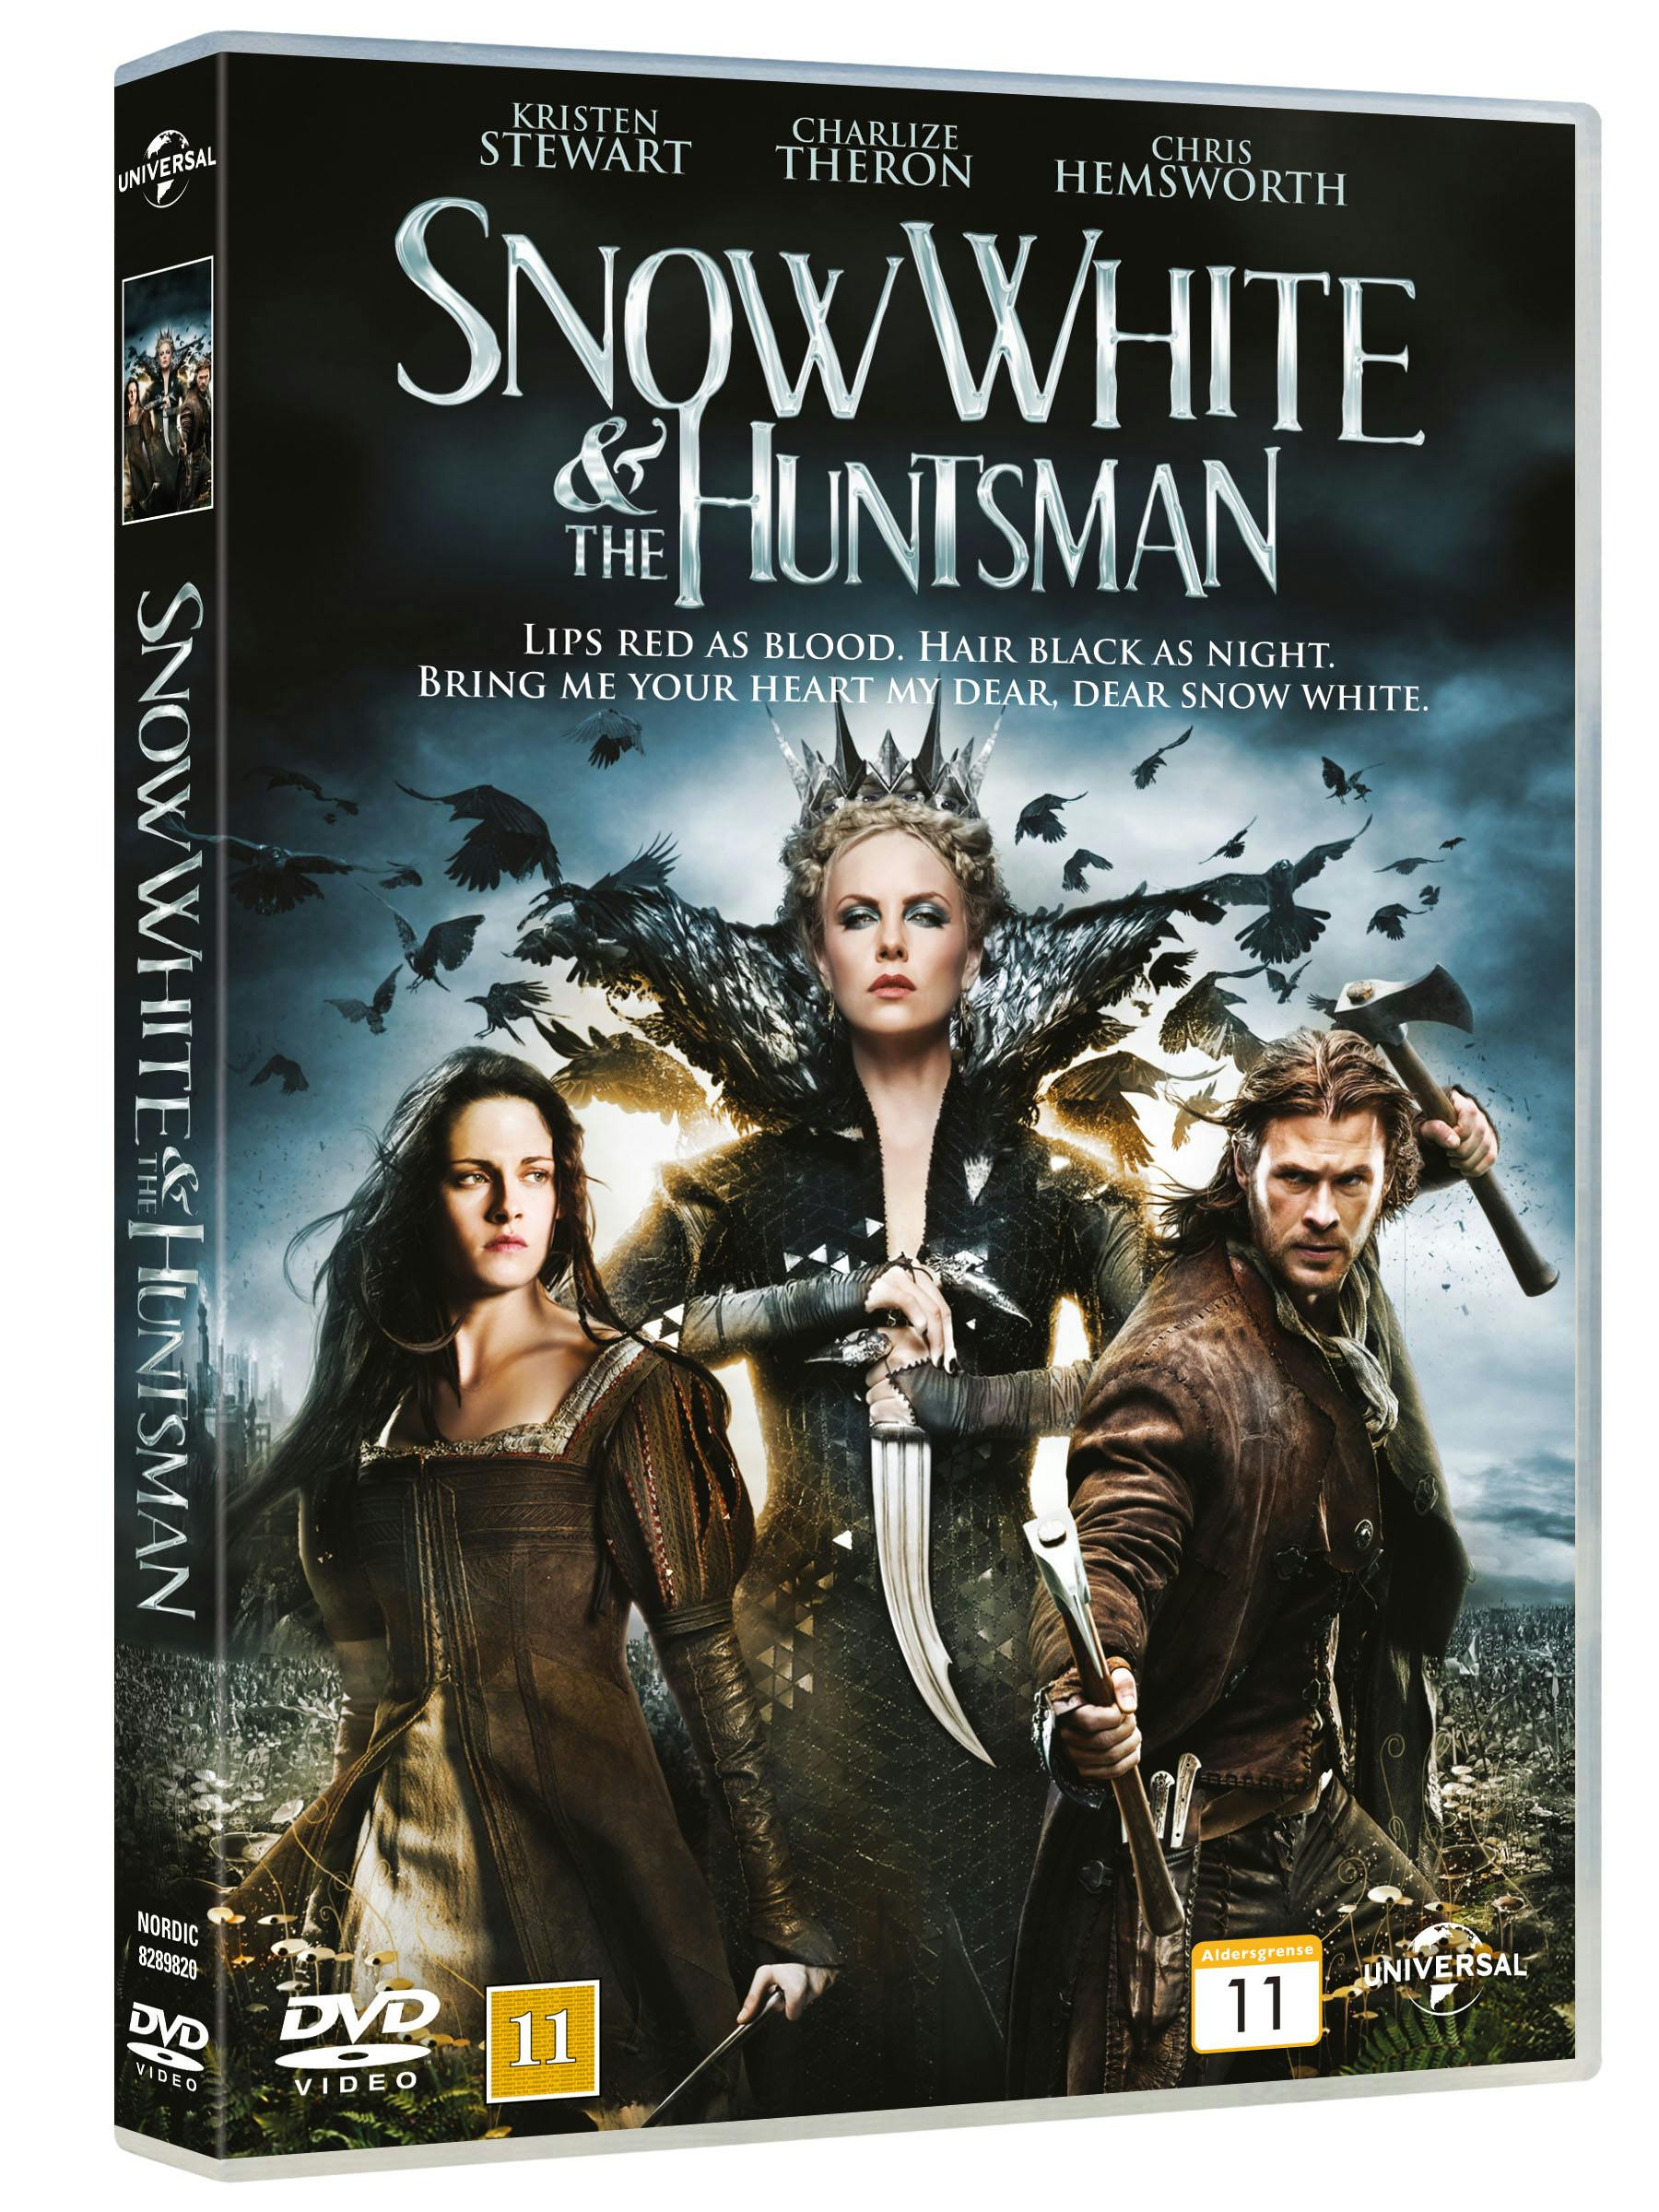 https://imgix.seoghoer.dk/snow_white_and_the_huntsman_dvd_pack_nordic.jpg